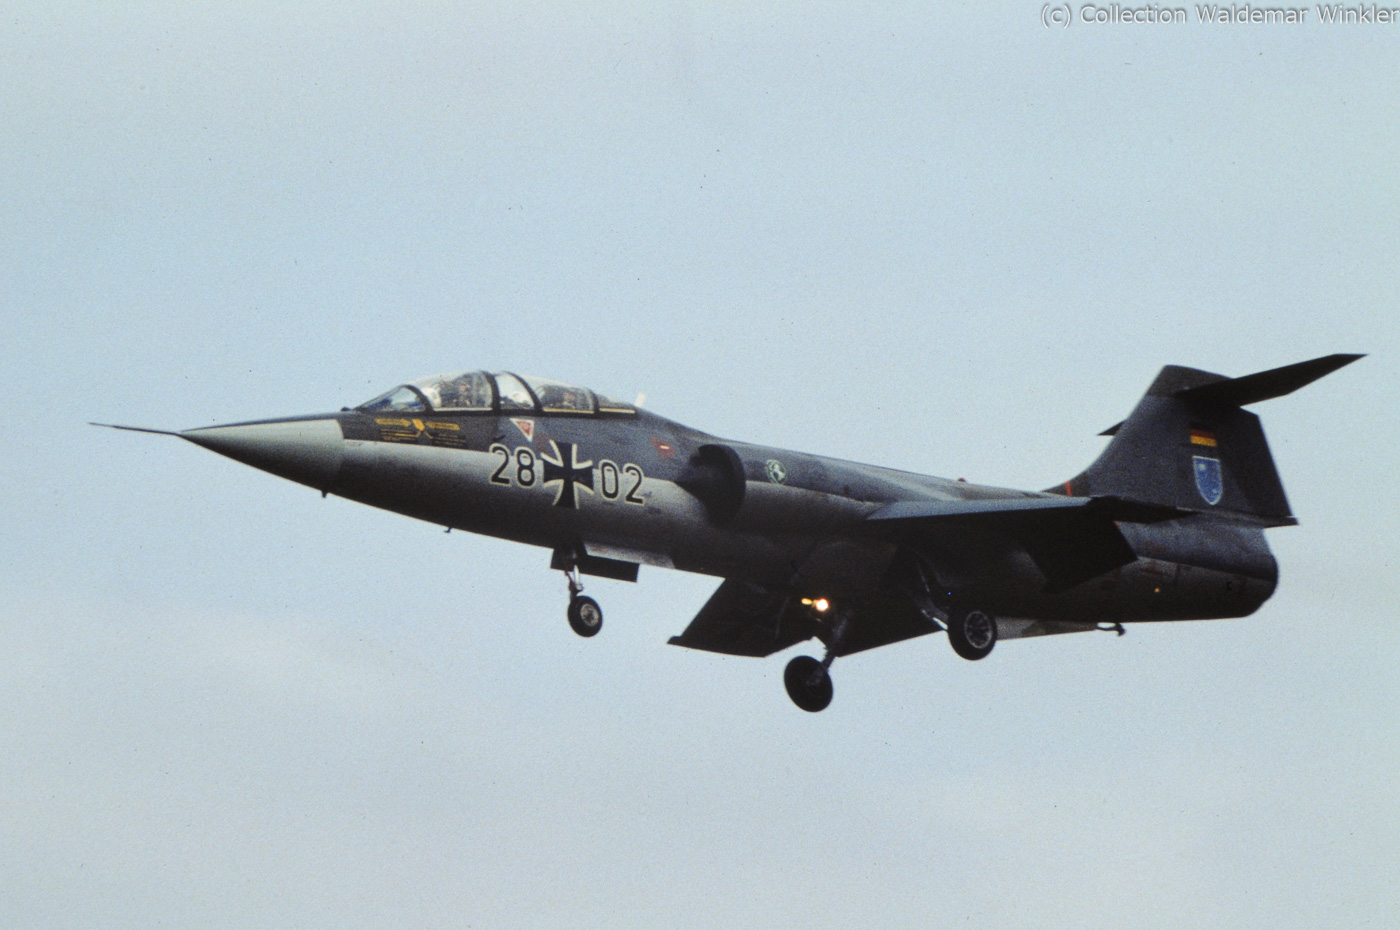 TF-104_G_Starfighter_DSC_0738.jpg